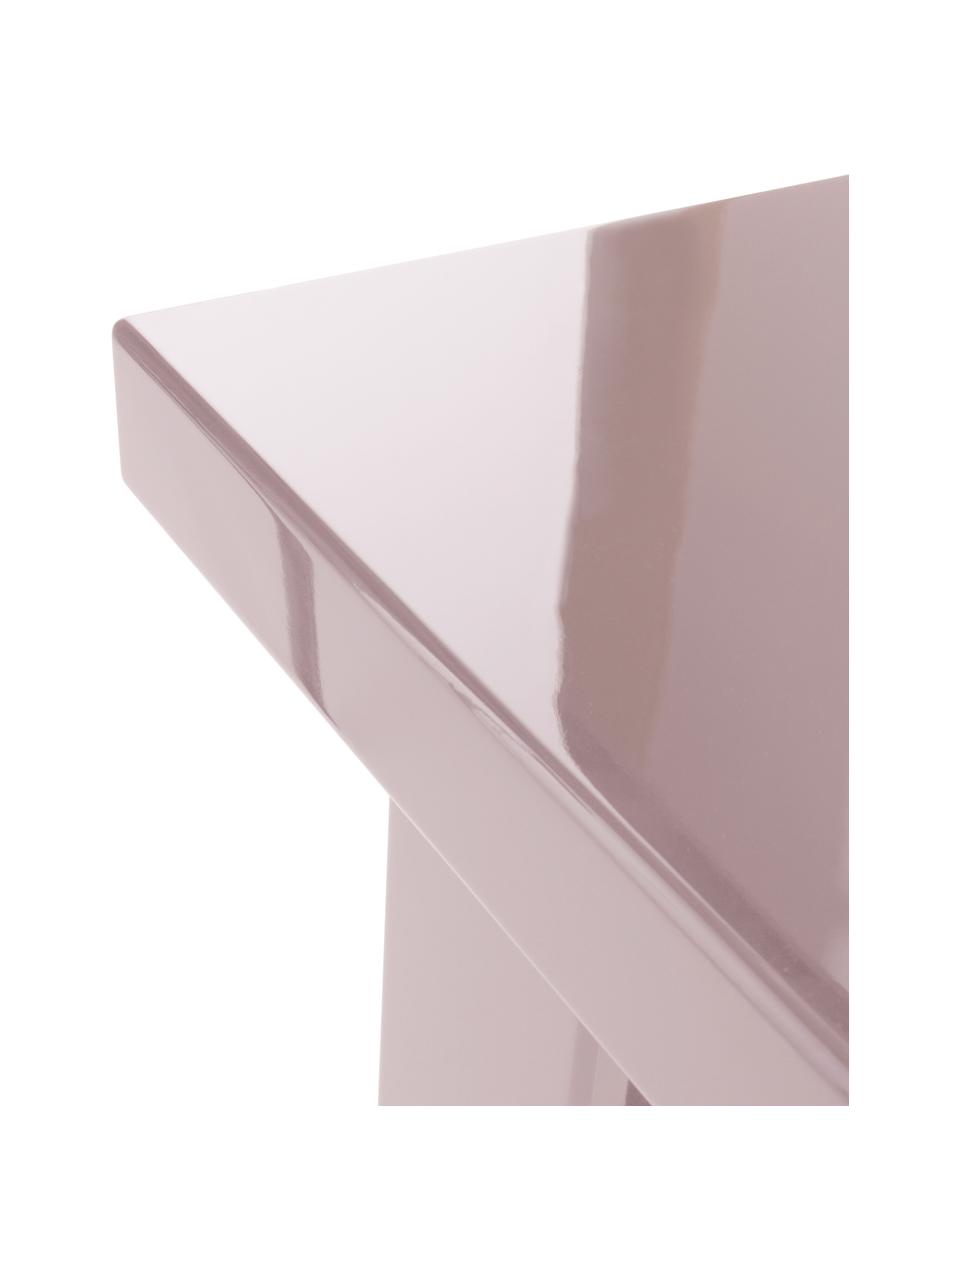 Stolik pomocniczy Crozz, Płyta pilśniowa średniej gęstości (MDF) lakierowana, Blady różowy, S 50 x W 48 cm